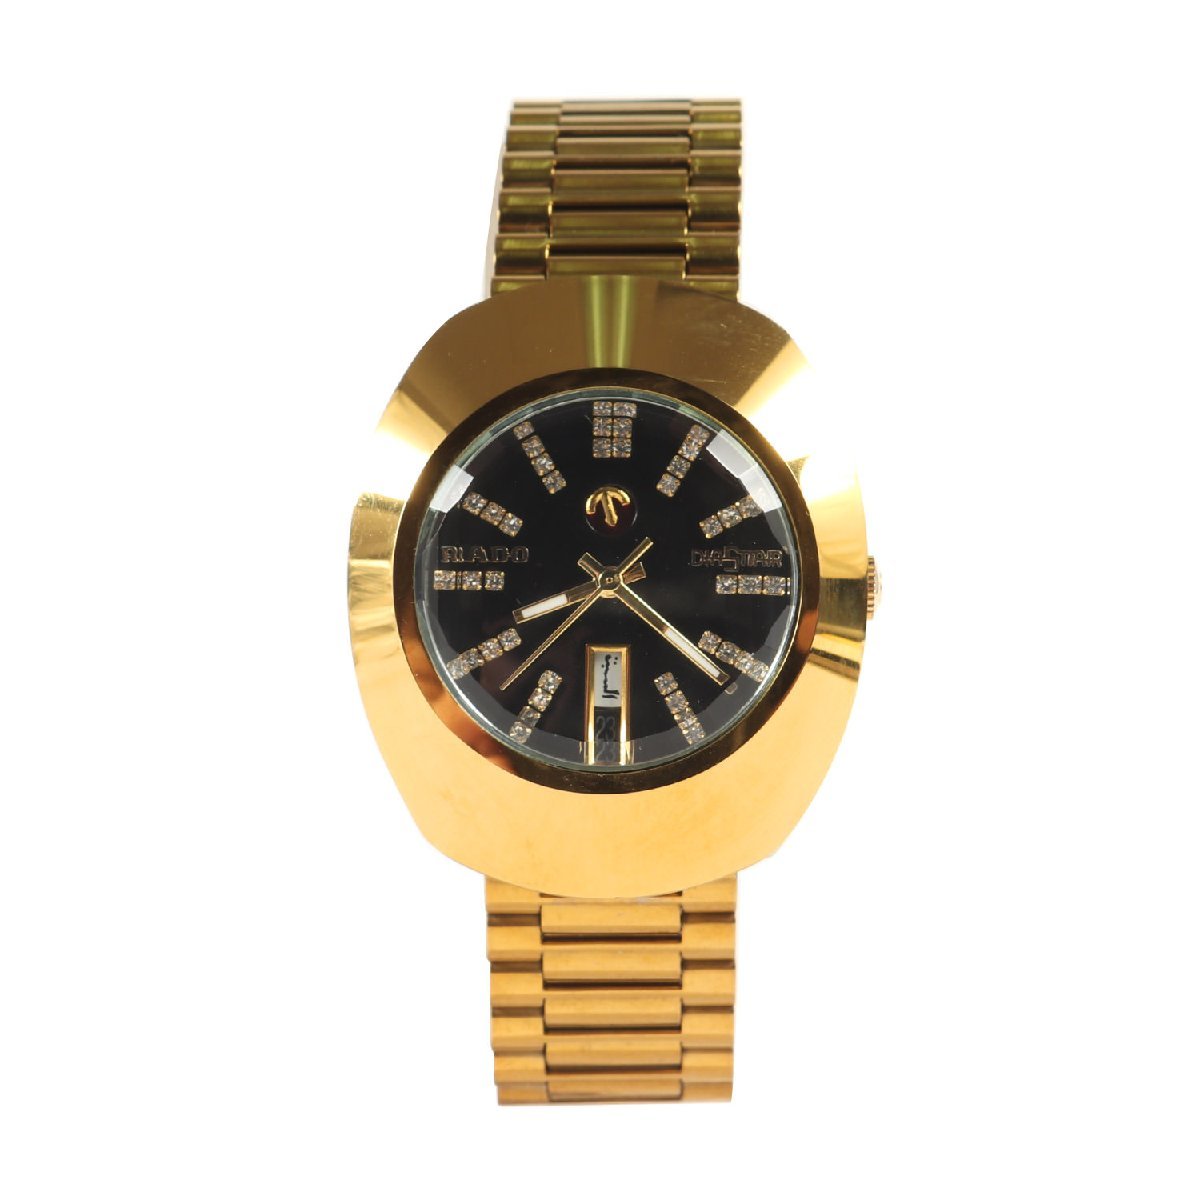 RADO Rado Diastar дата самозаводящиеся часы DiaStar 648.0413.3 наручные часы автоматический Gold бренд часы стразы 